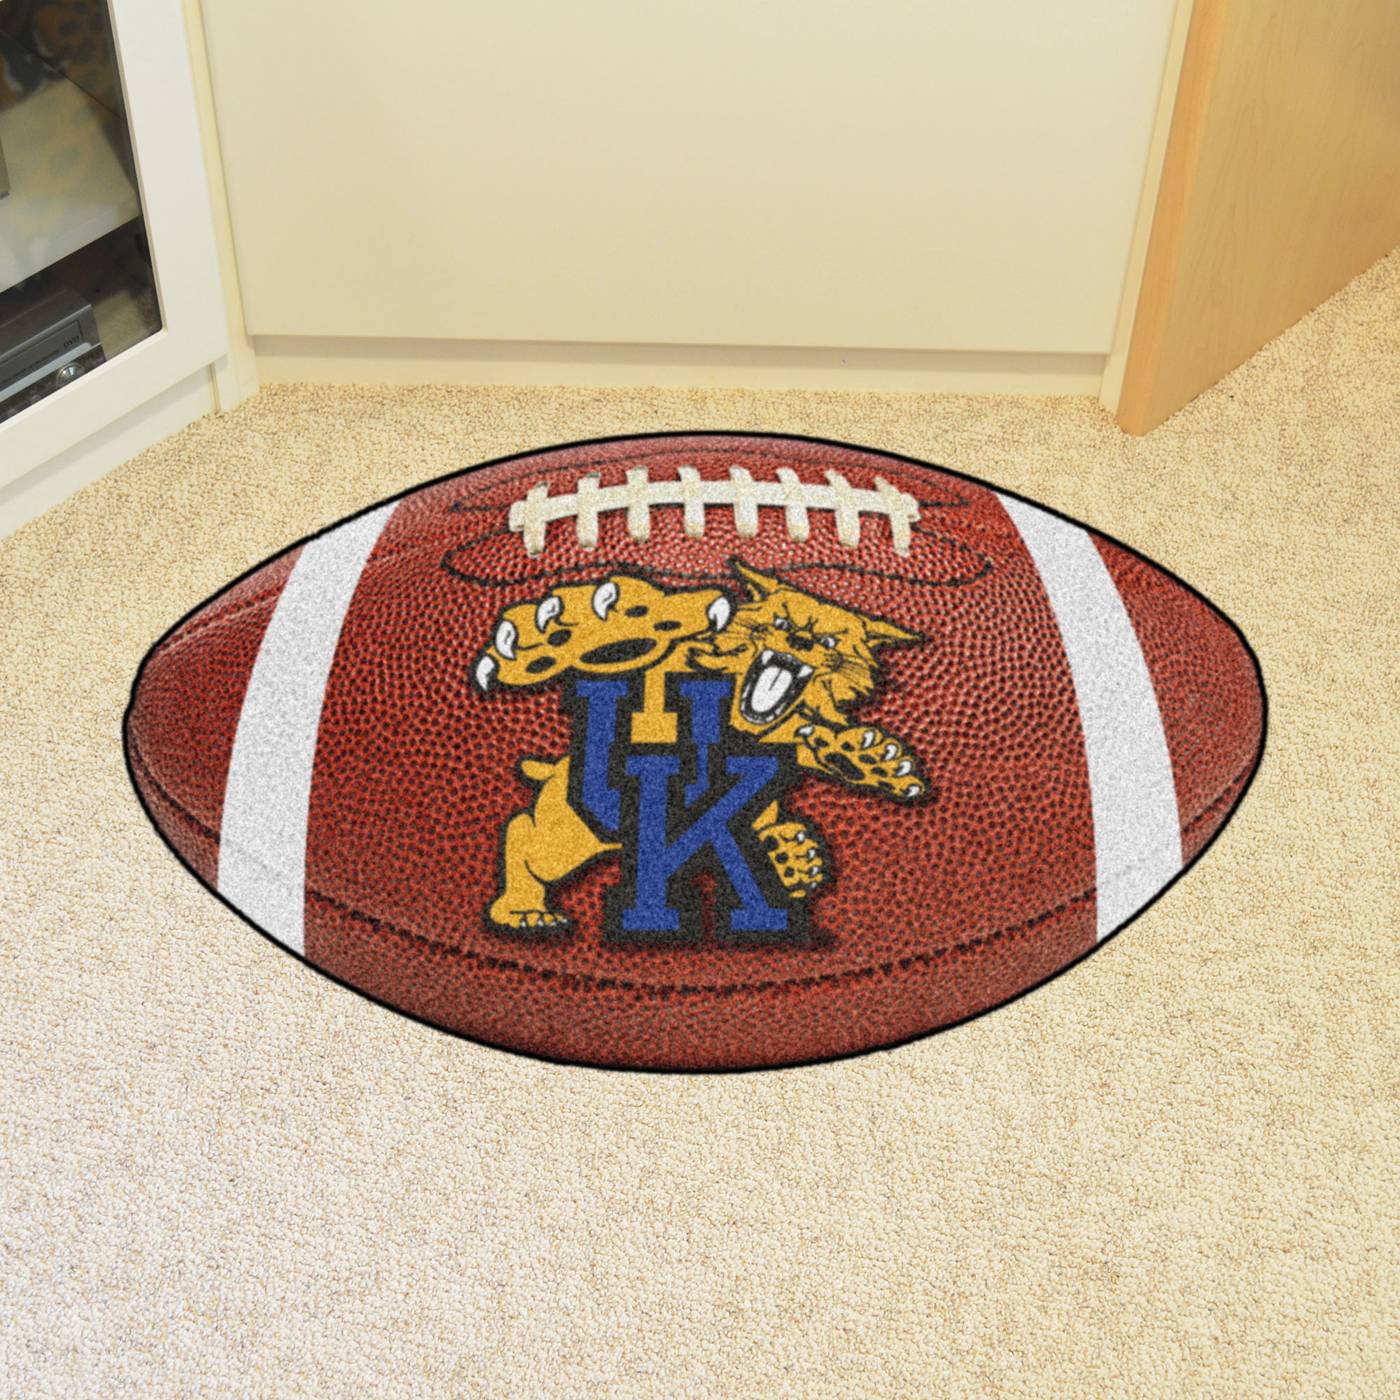 Kentucky Wildcats Football Floor Mat